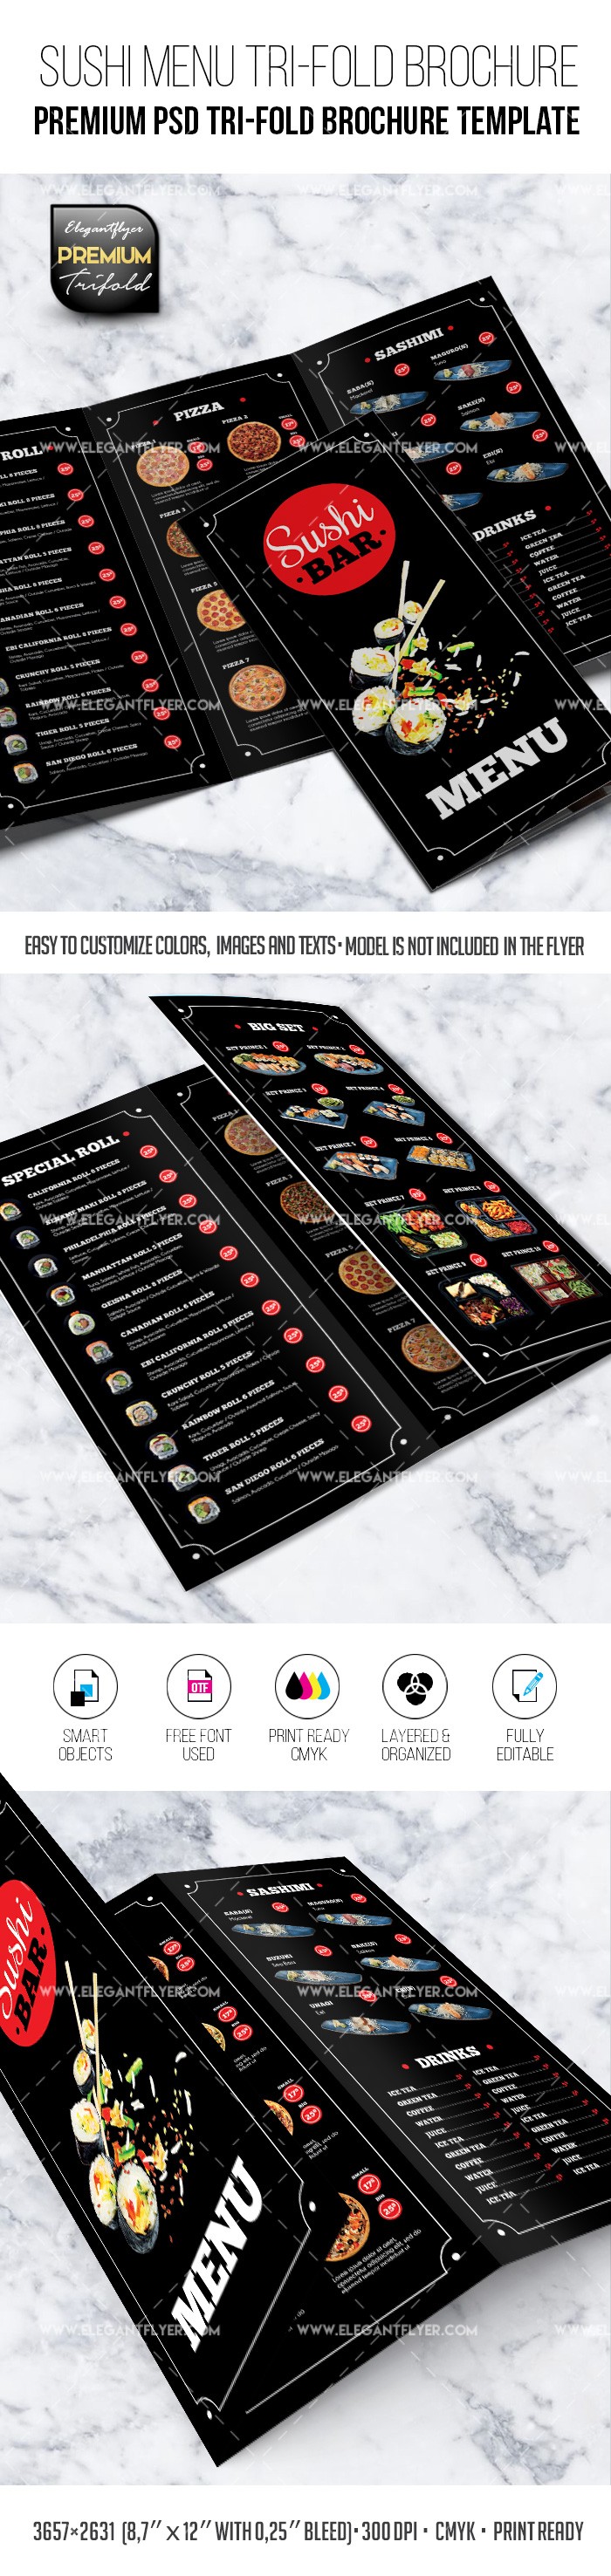 Menu del ristorante di sushi - Modello di Brochure Tri-Fold Premium PSD by ElegantFlyer